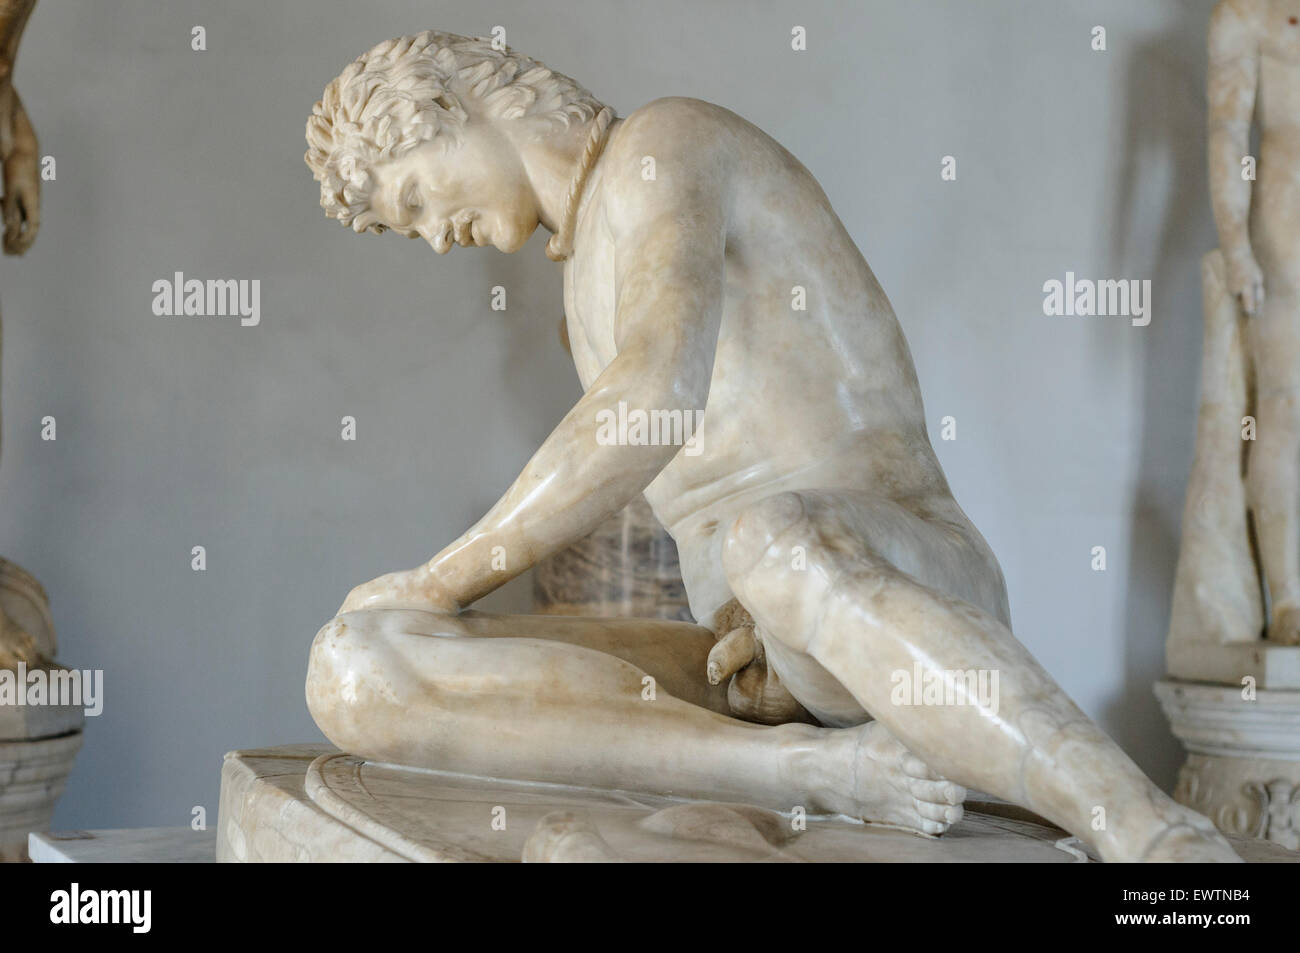 Sterbende Galater Skulptur Kapitolinischen Museen Musei Capitolini Rom Italien Stockfoto